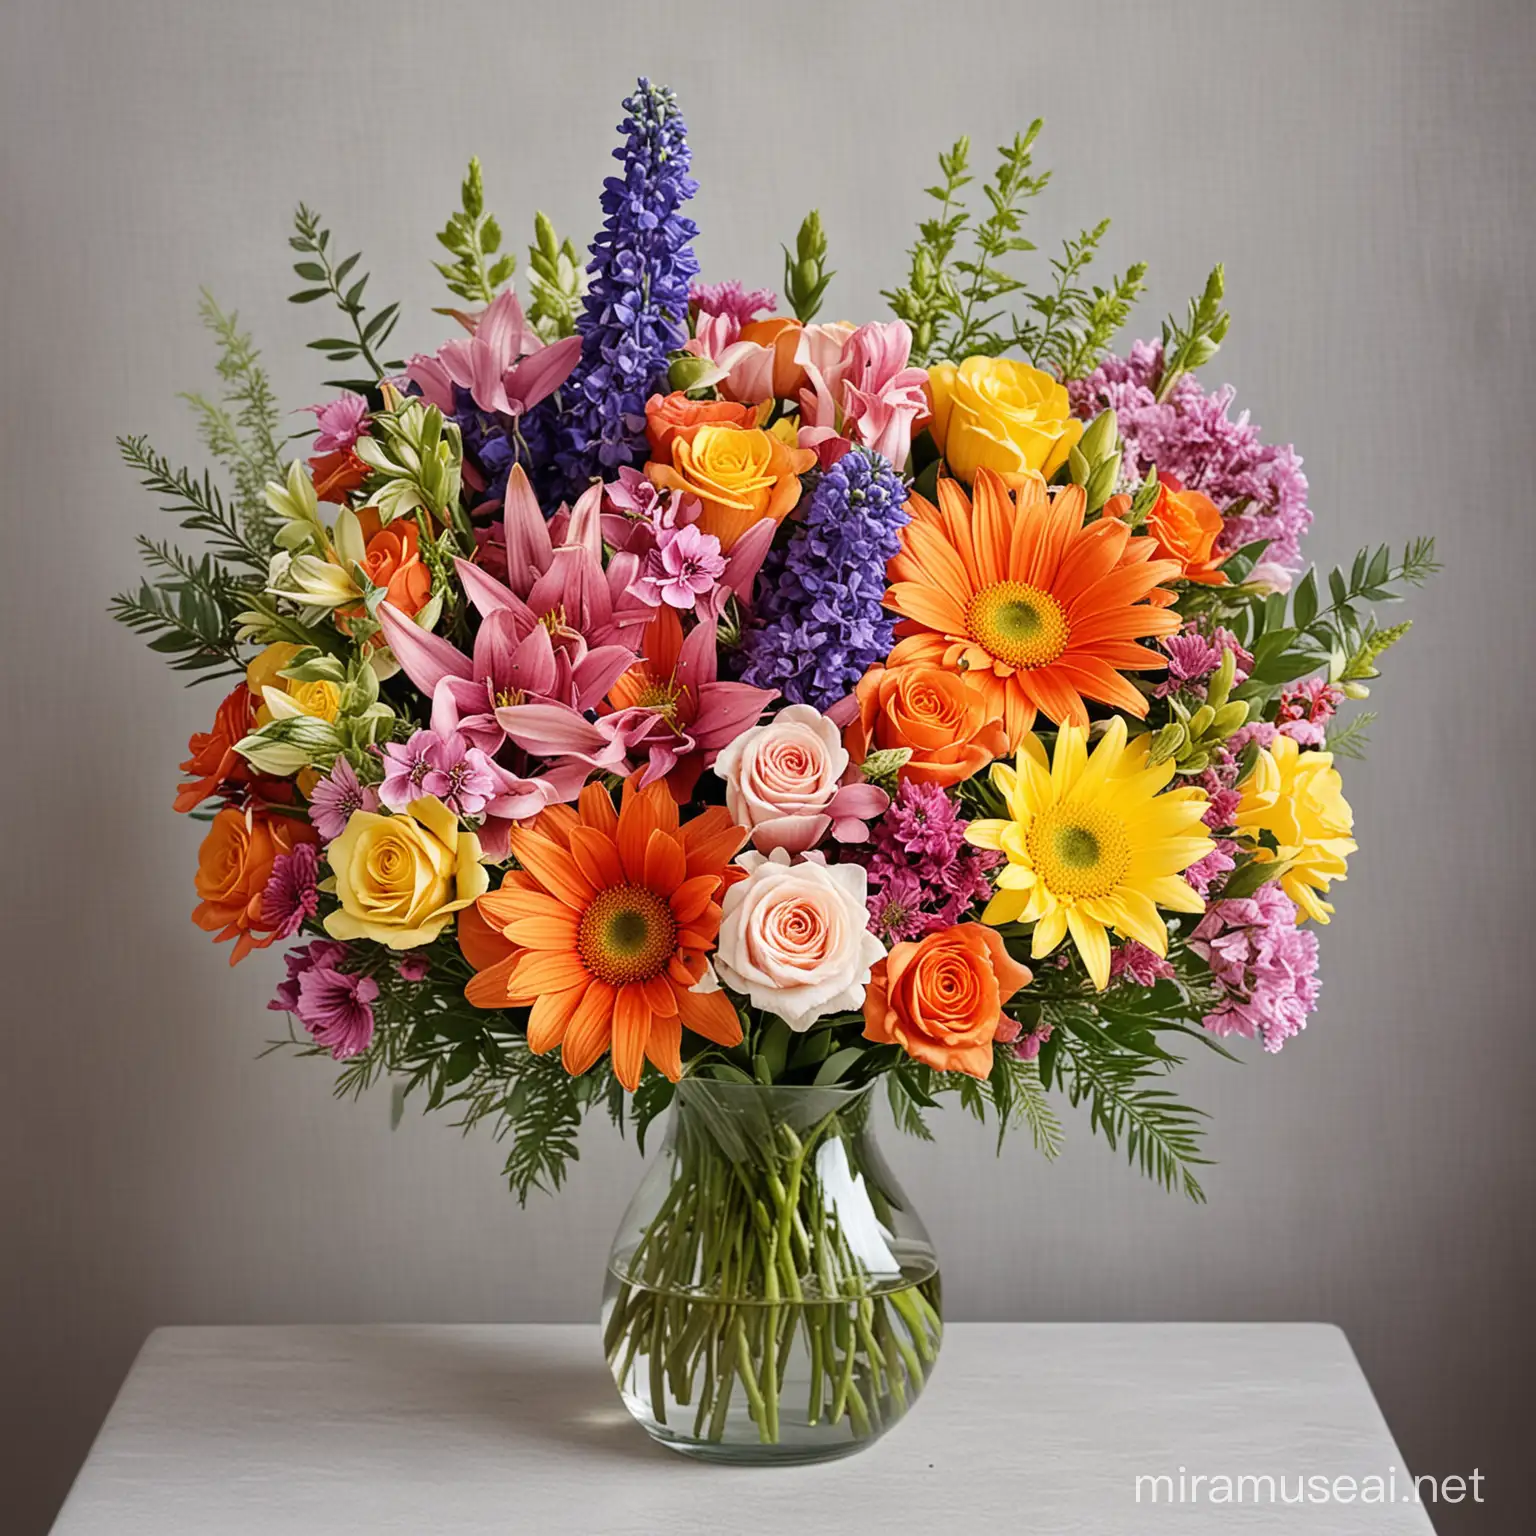 Vibrant Floral Arrangement Colorful Bouquet in a Decorative Vase